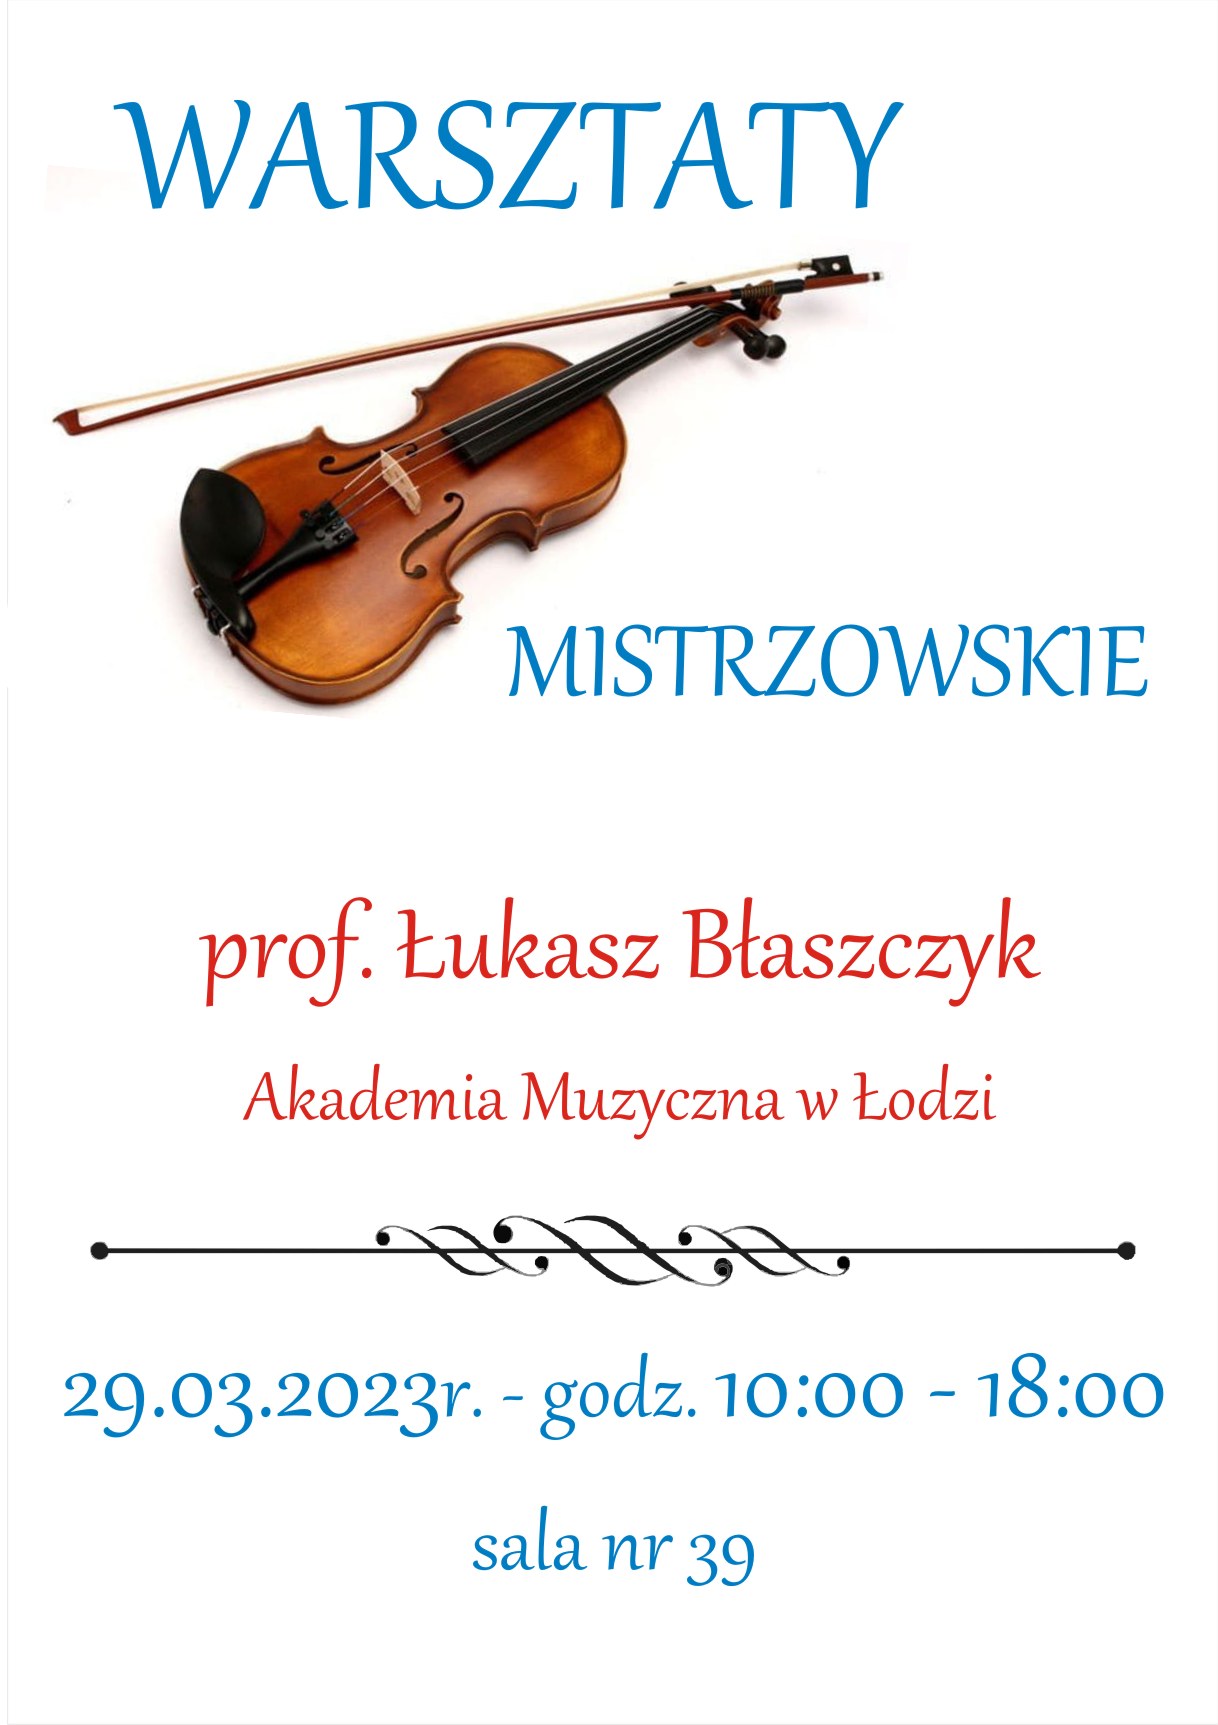 Plakat warsztatów mistrzowskich - skrzypcowych, prowadzący prof. Łukasz Błaszczyk. Niebieskie, czerwone litery, w tle skrzypce.